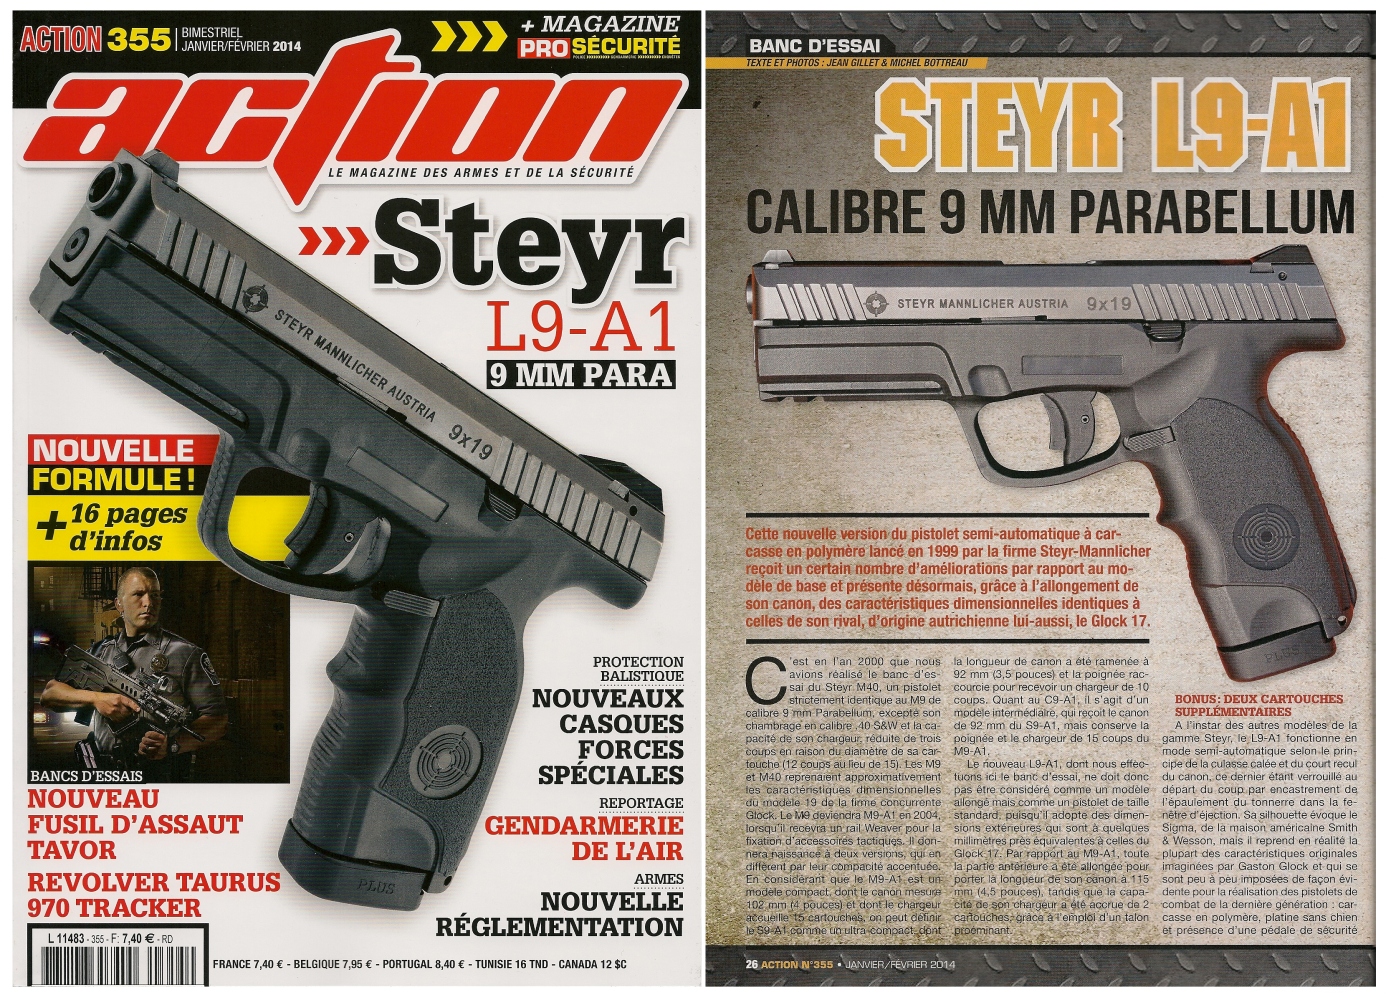 Le banc d’essai du pistolet Steyr-Mannlicher L9-A1 a été publié sur 6 pages dans le magazine Action n°355 (janvier-février 2014)